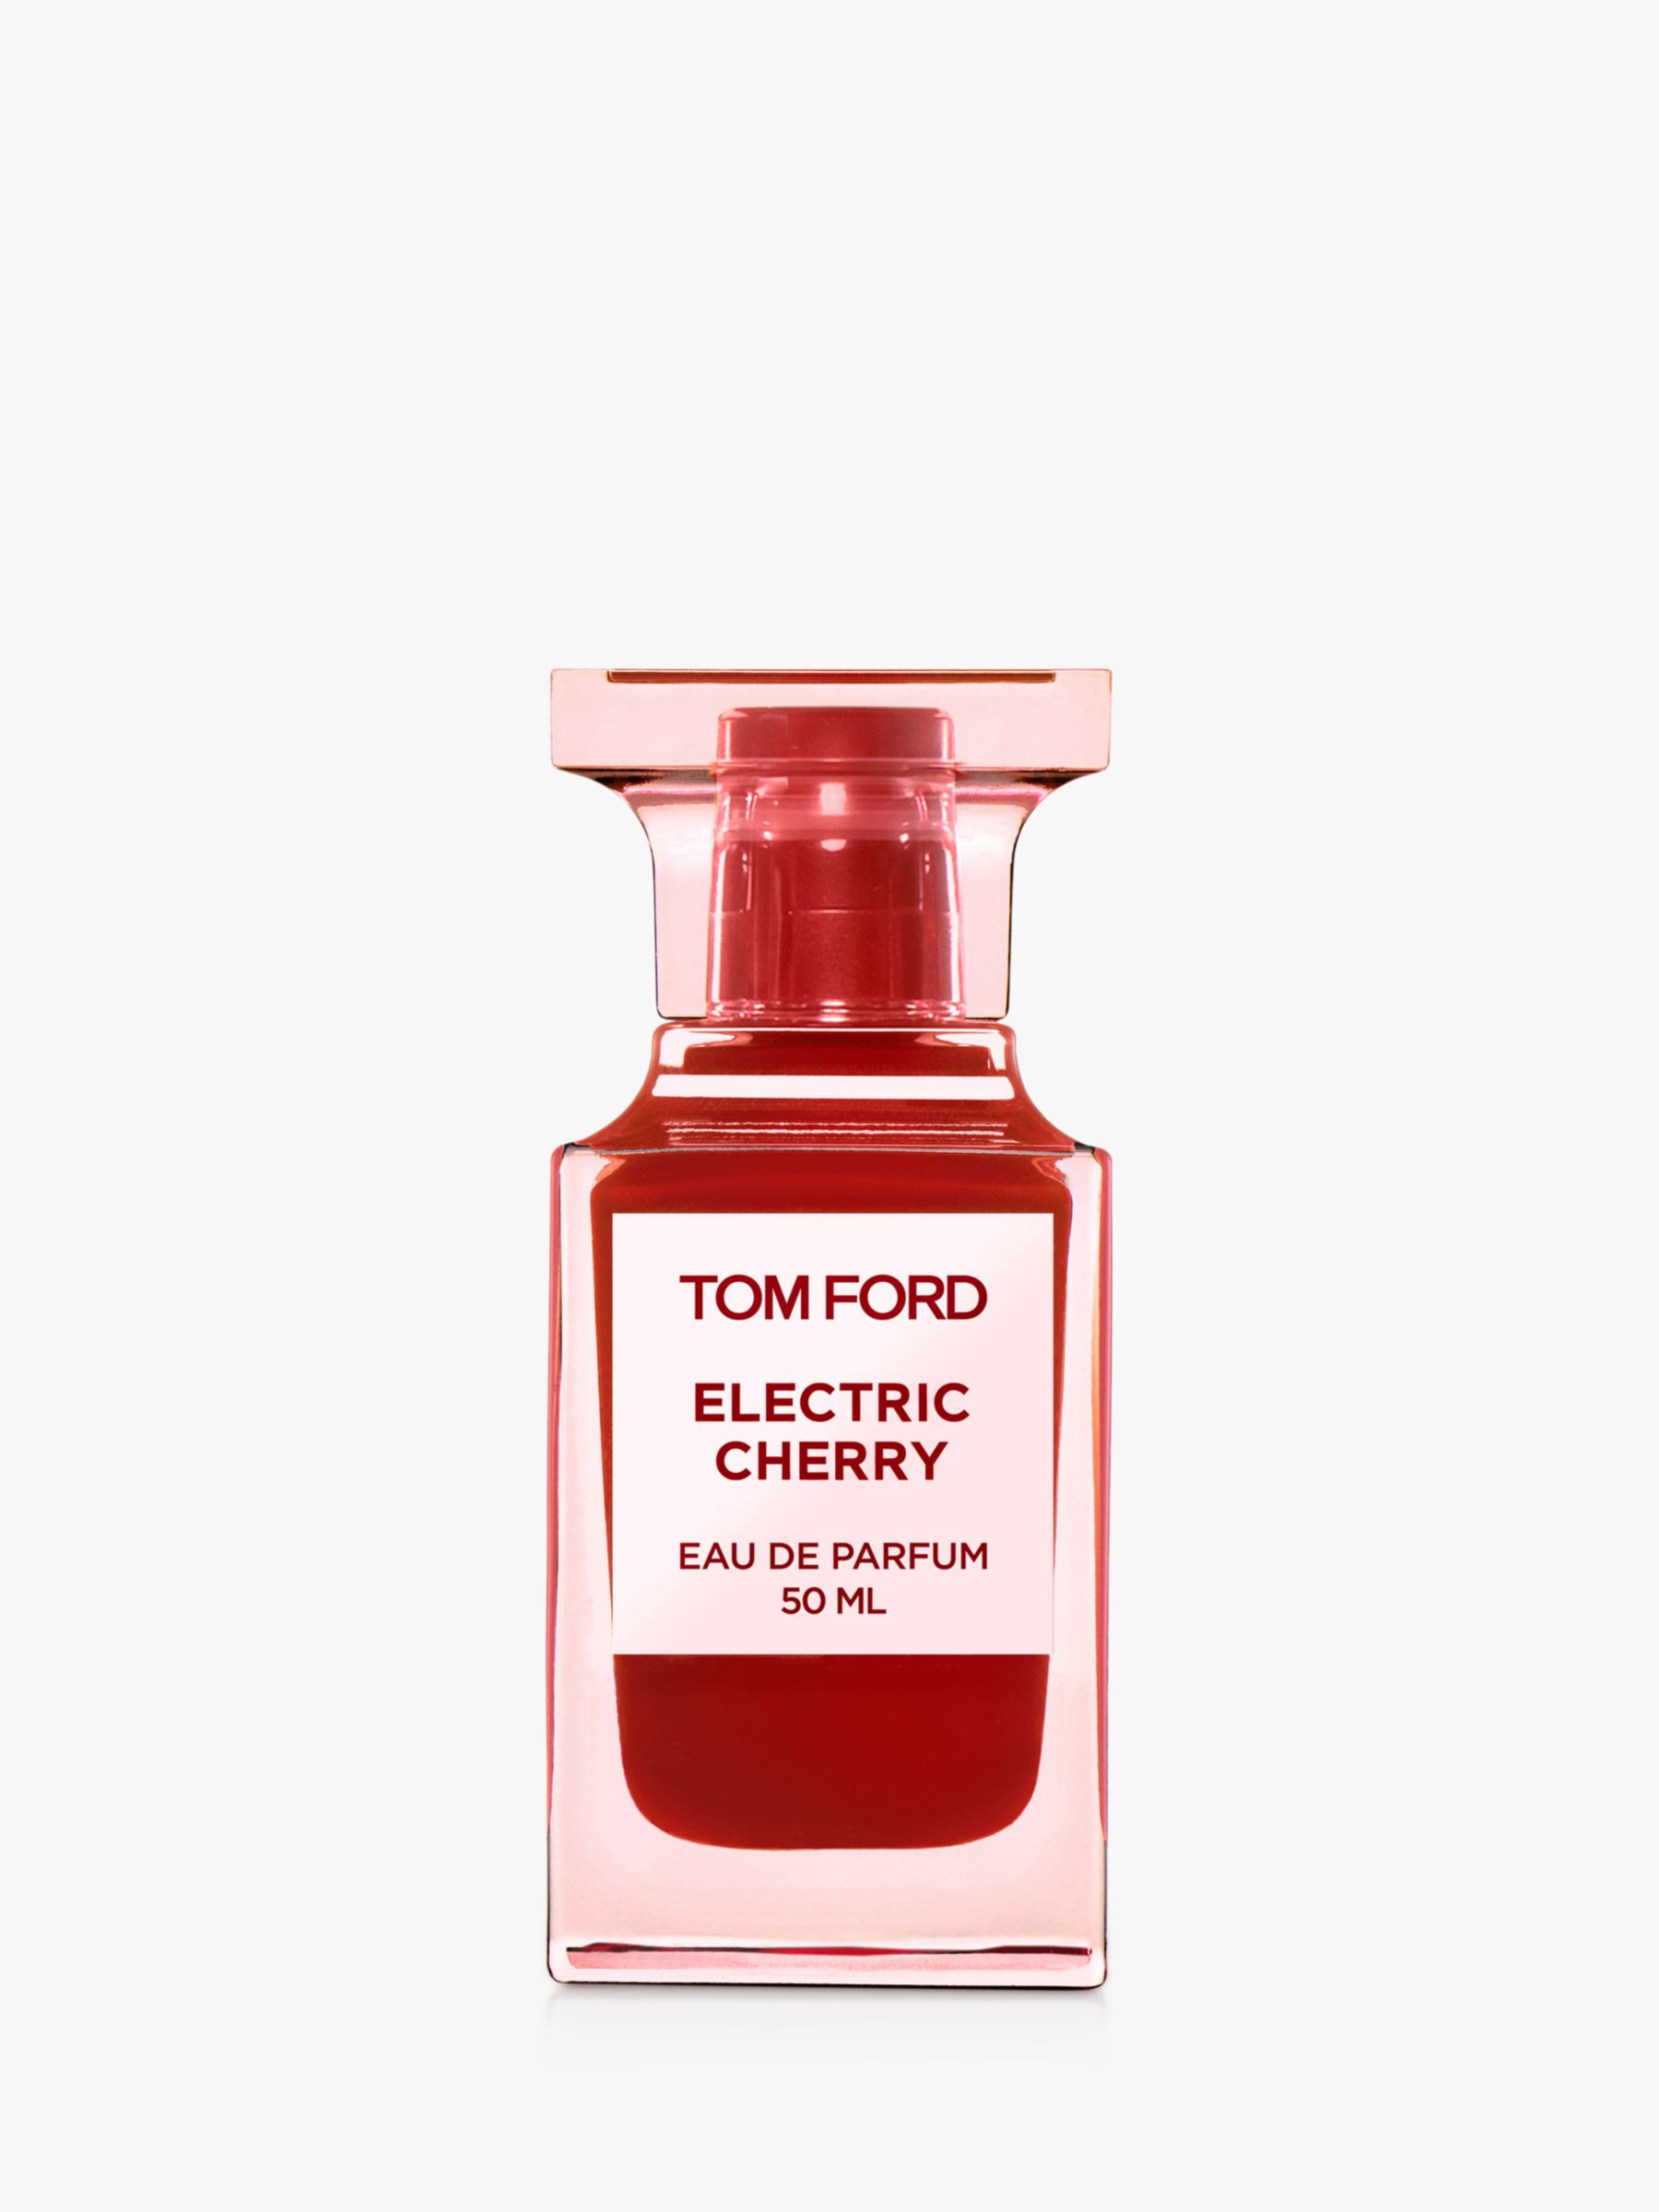 TOM FORD Electric Cherry Eau de Parfum, 50ml at John Lewis & Partners